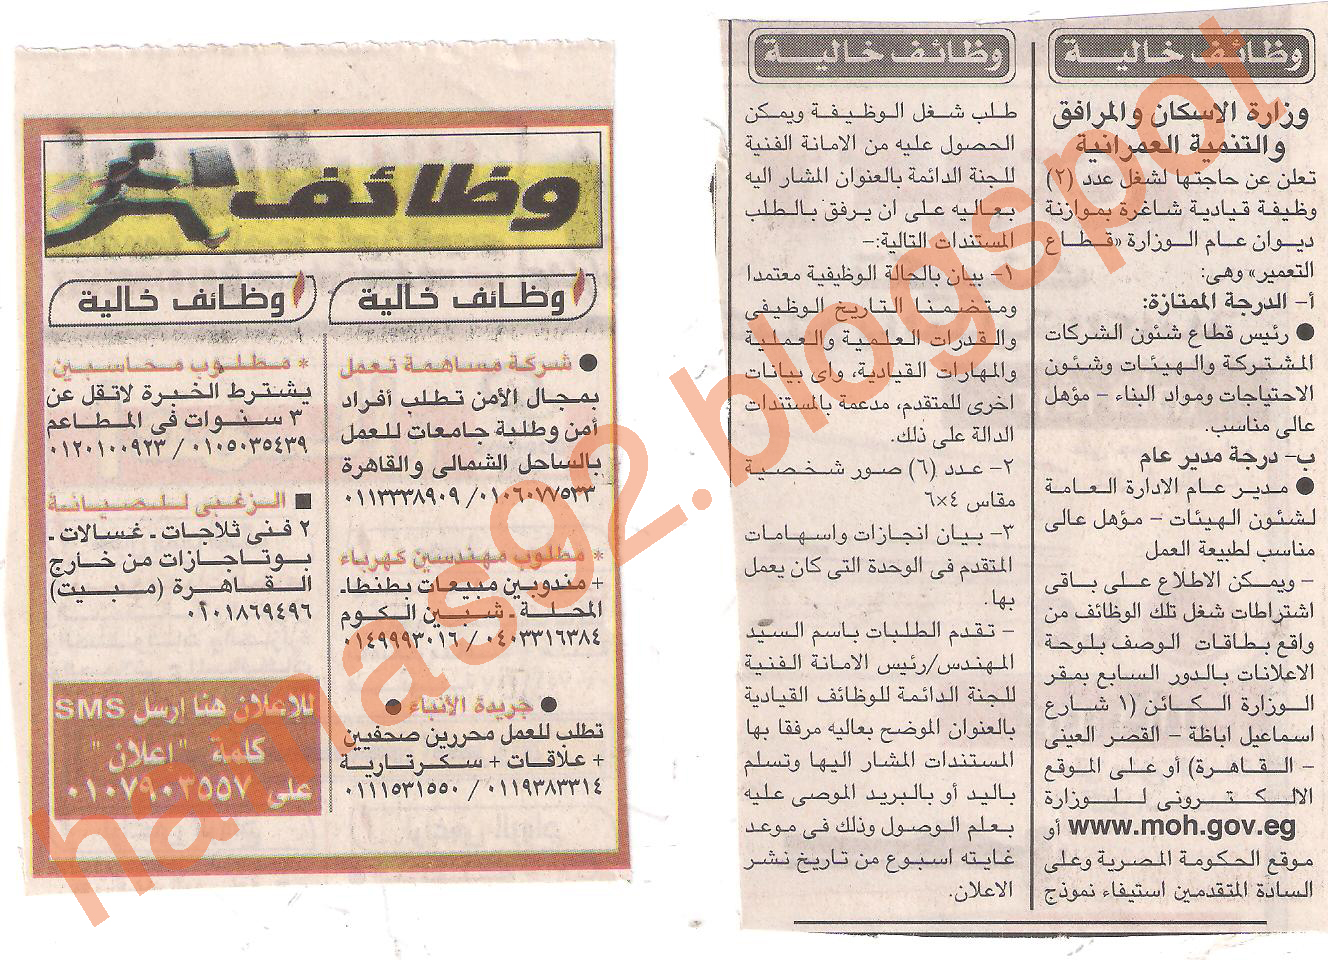 وظائف خالية من جريدة الاخبار الجمعة 15/7/2011 Picture+015